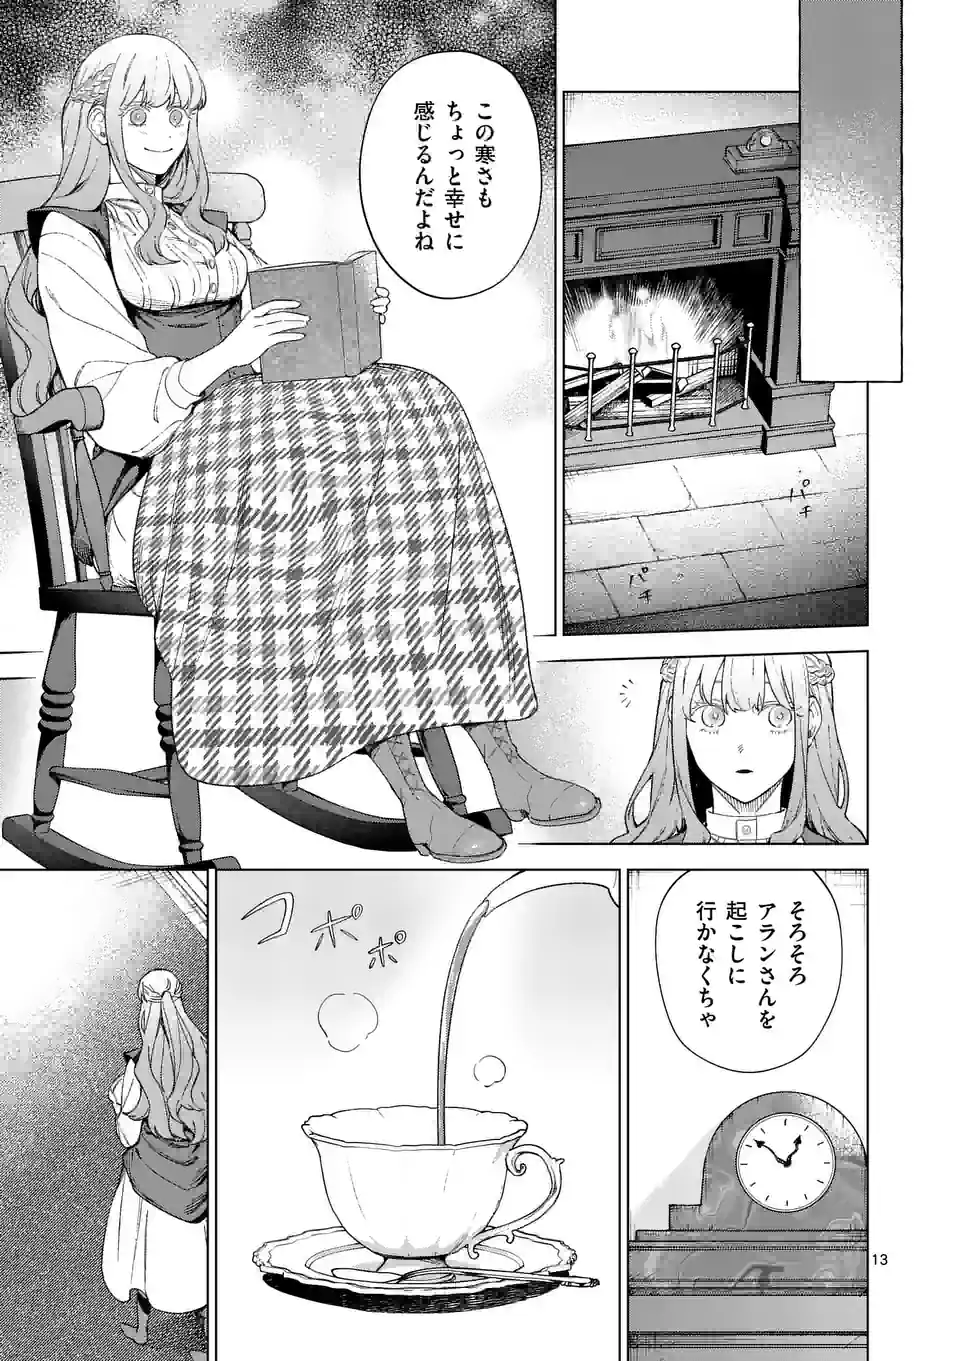 Mou Kyoumi ga Nai to Rikonsareta Reijou no Igai to Tanoshii Shinseikatsu - Chapter 9.5 - Page 1